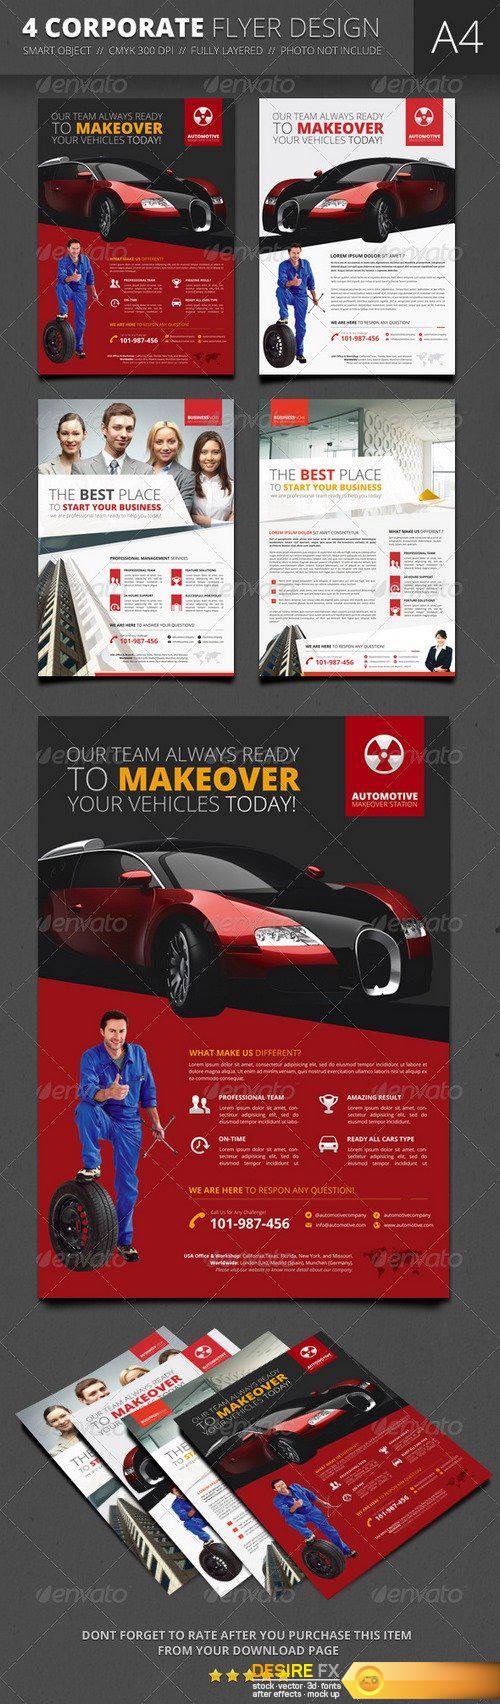 Graphicriver - Corporate Flyer Design 6857102